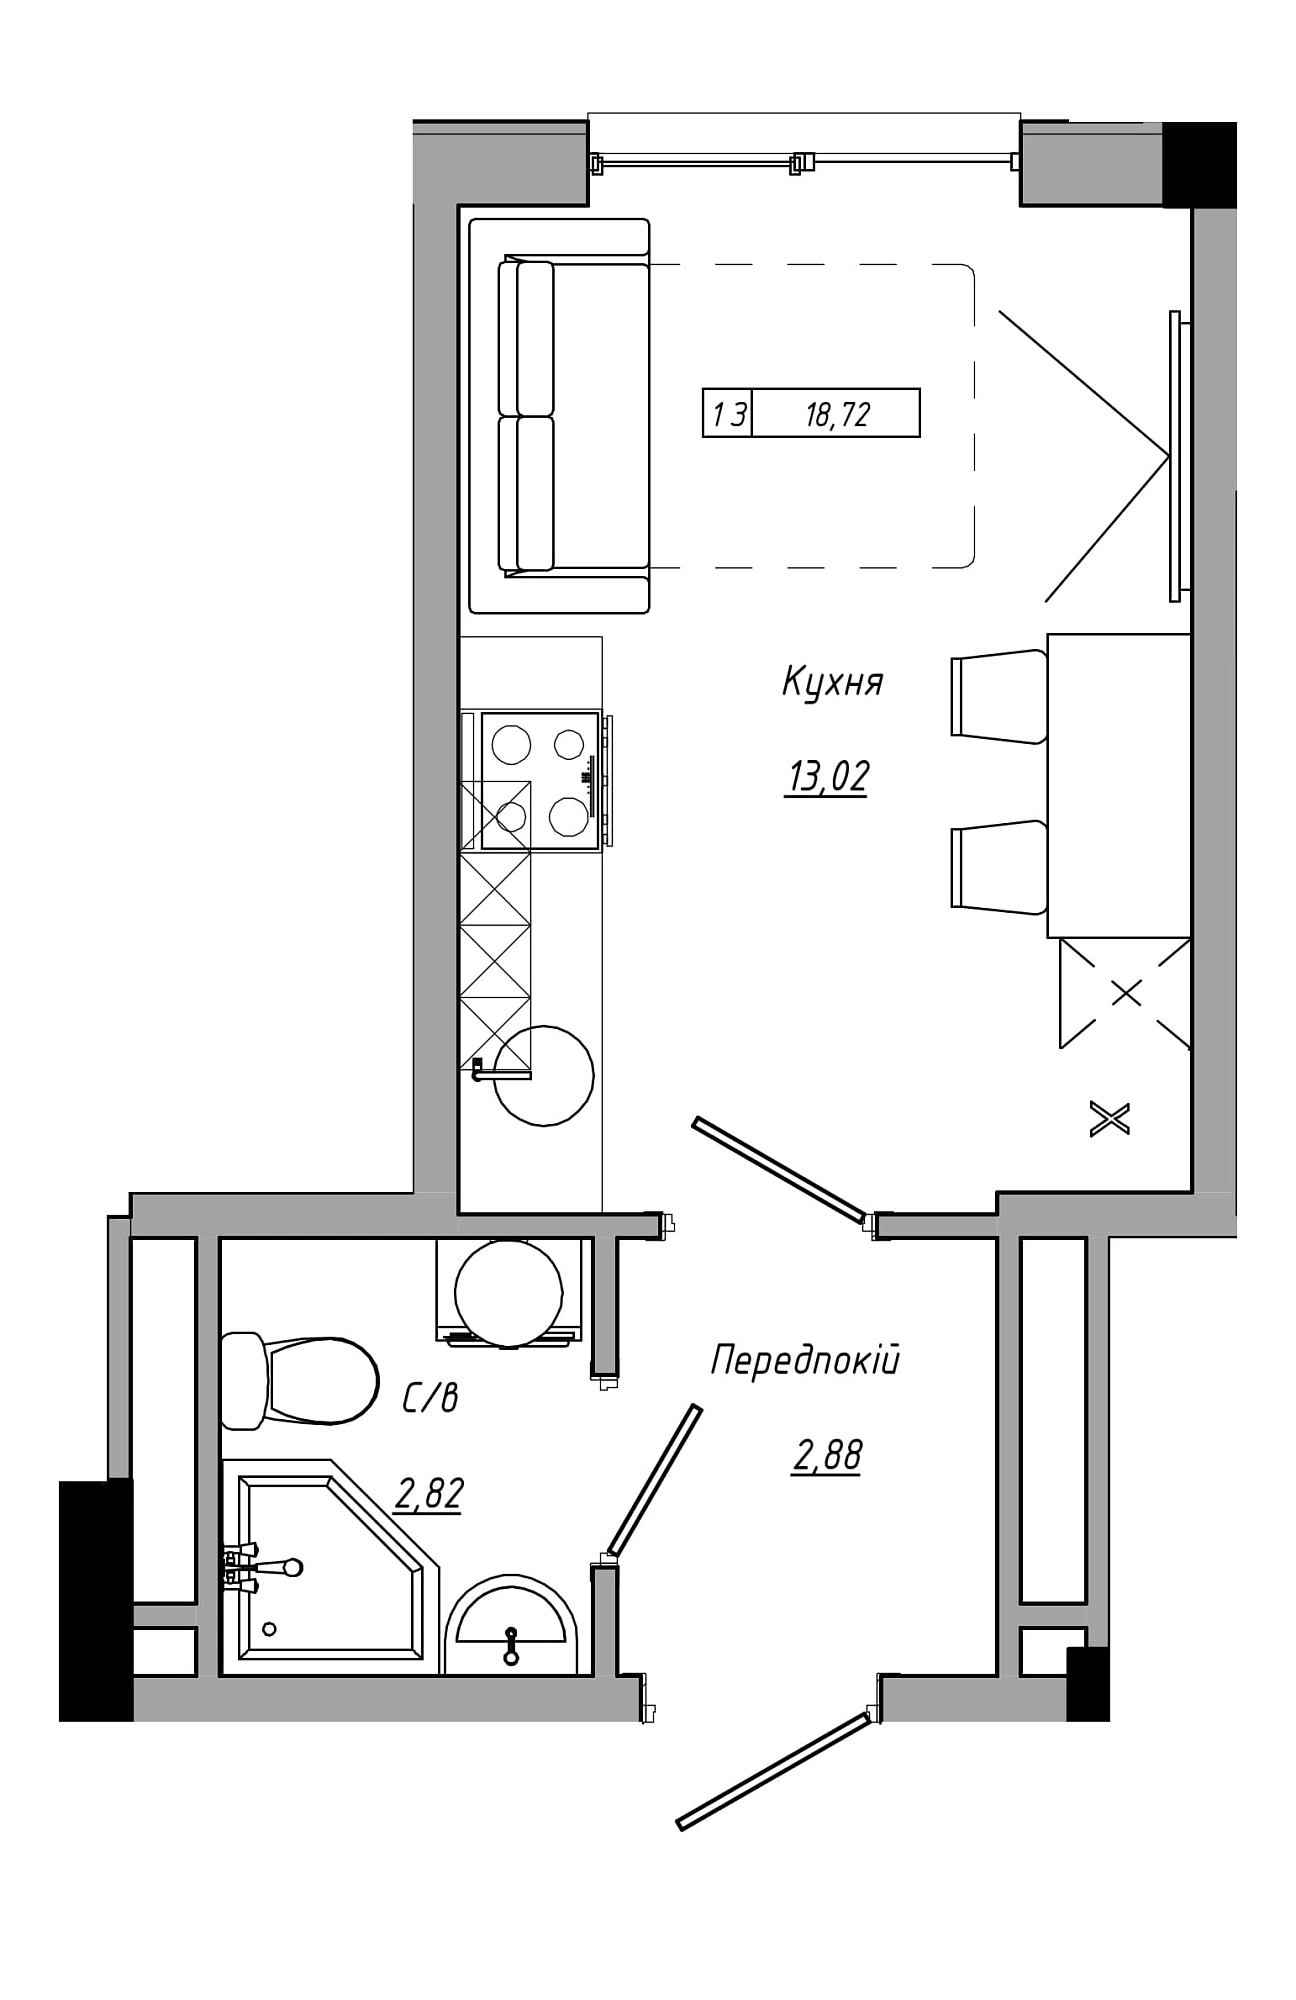 Планування Smart-квартира площею 18.72м2, AB-21-14/00111.